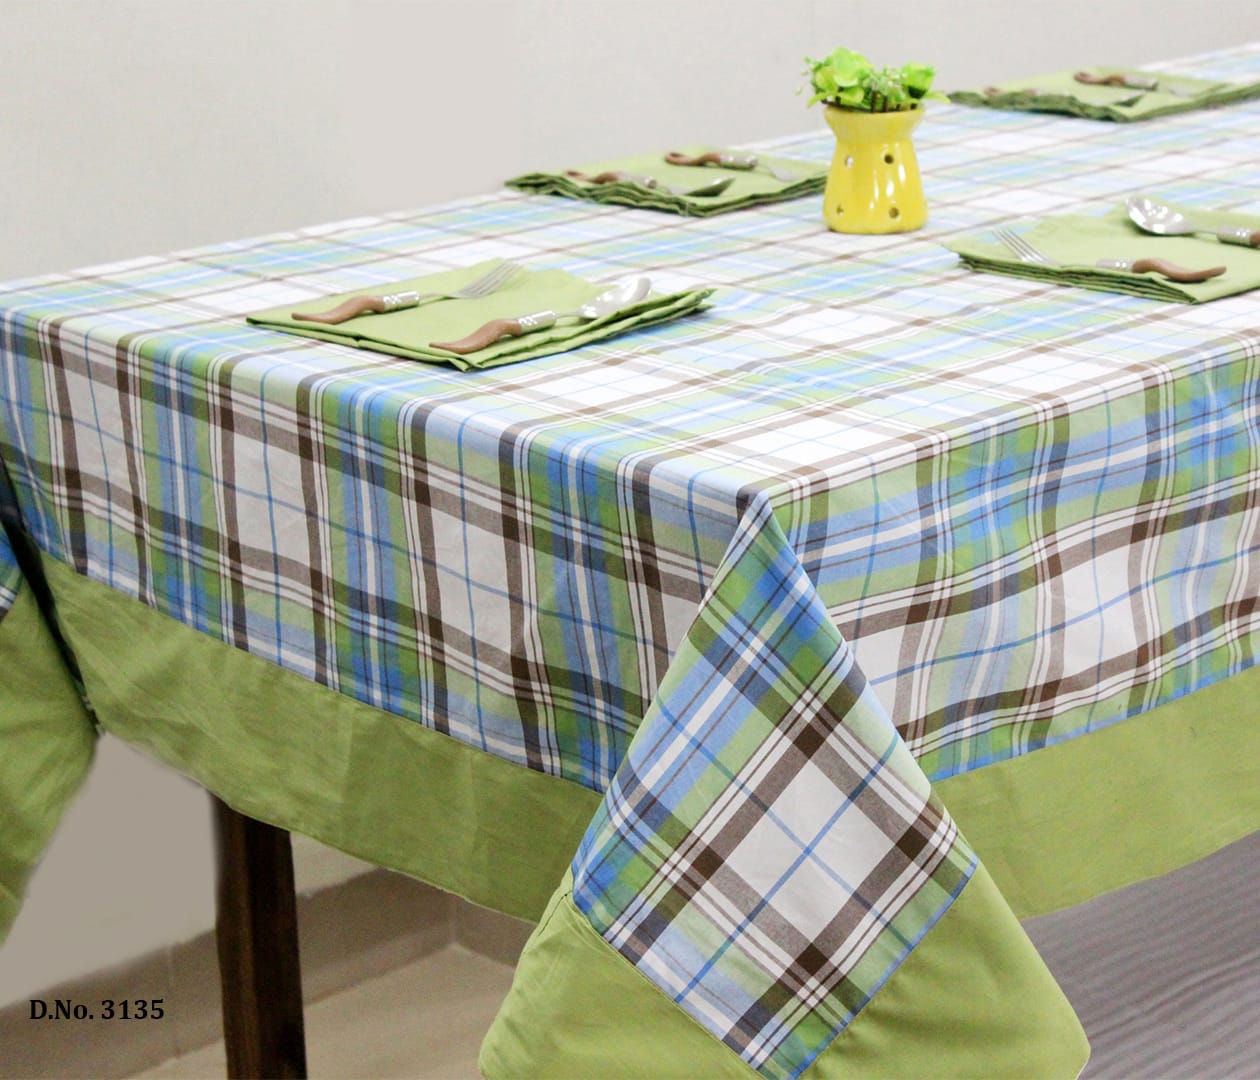 ALPHA Woven Cotton Check 1 Pc Table Cover - Green